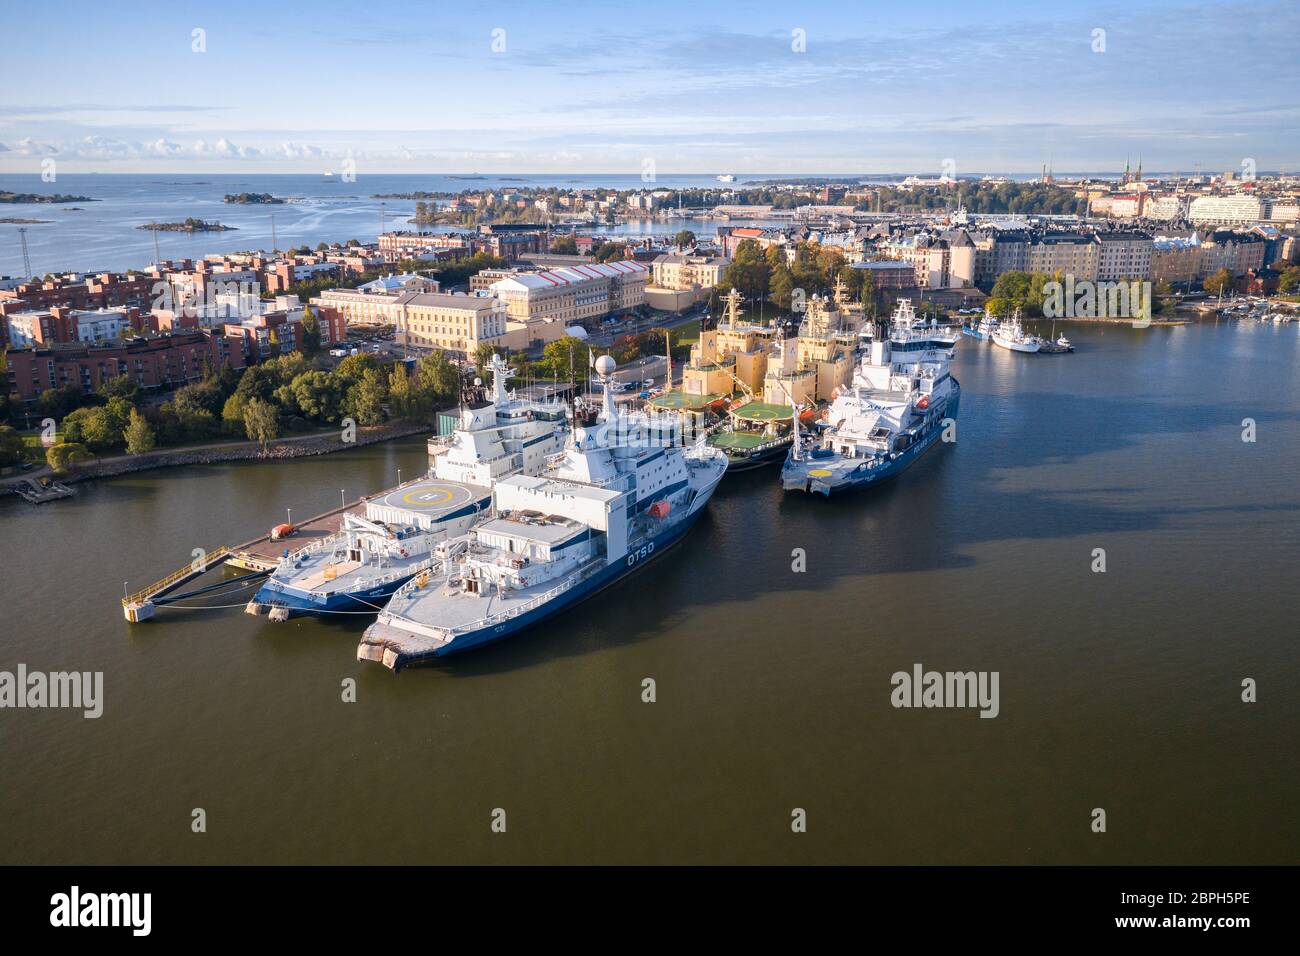 Finnish Icebreaker vessels moored on a dock in Helsinki, Finland in summer. Stock Photo